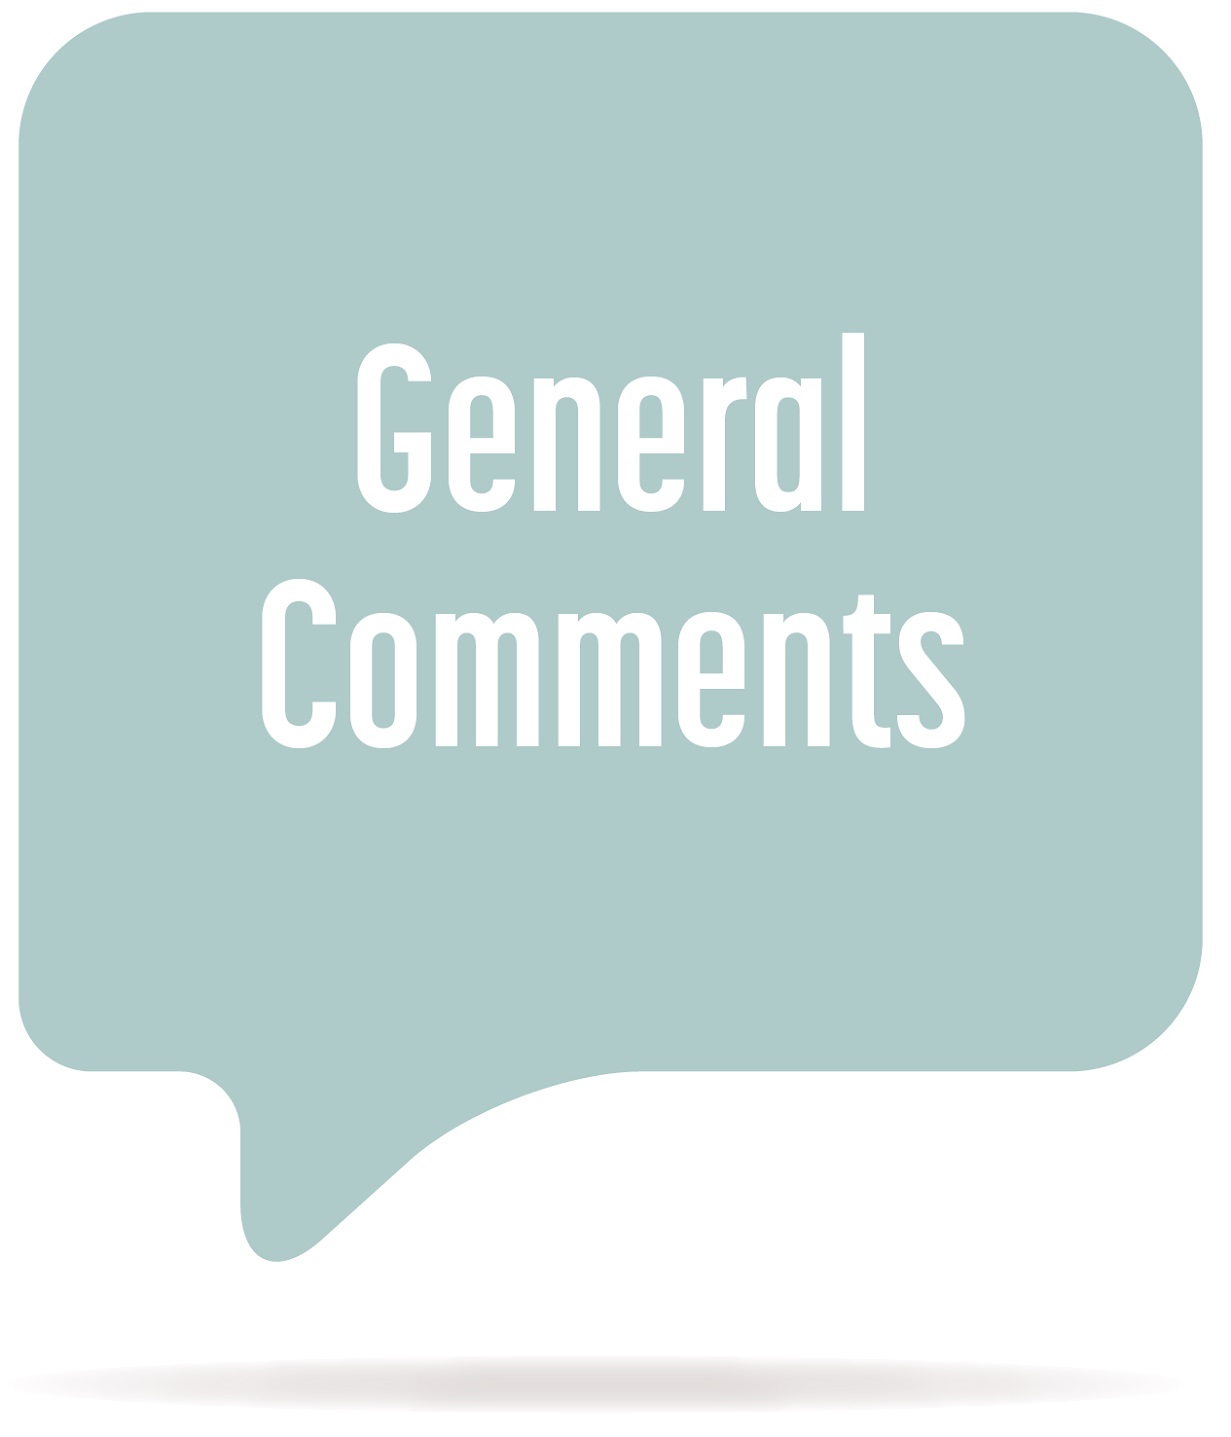 'General Comments' written in a blue-ish speech bubble